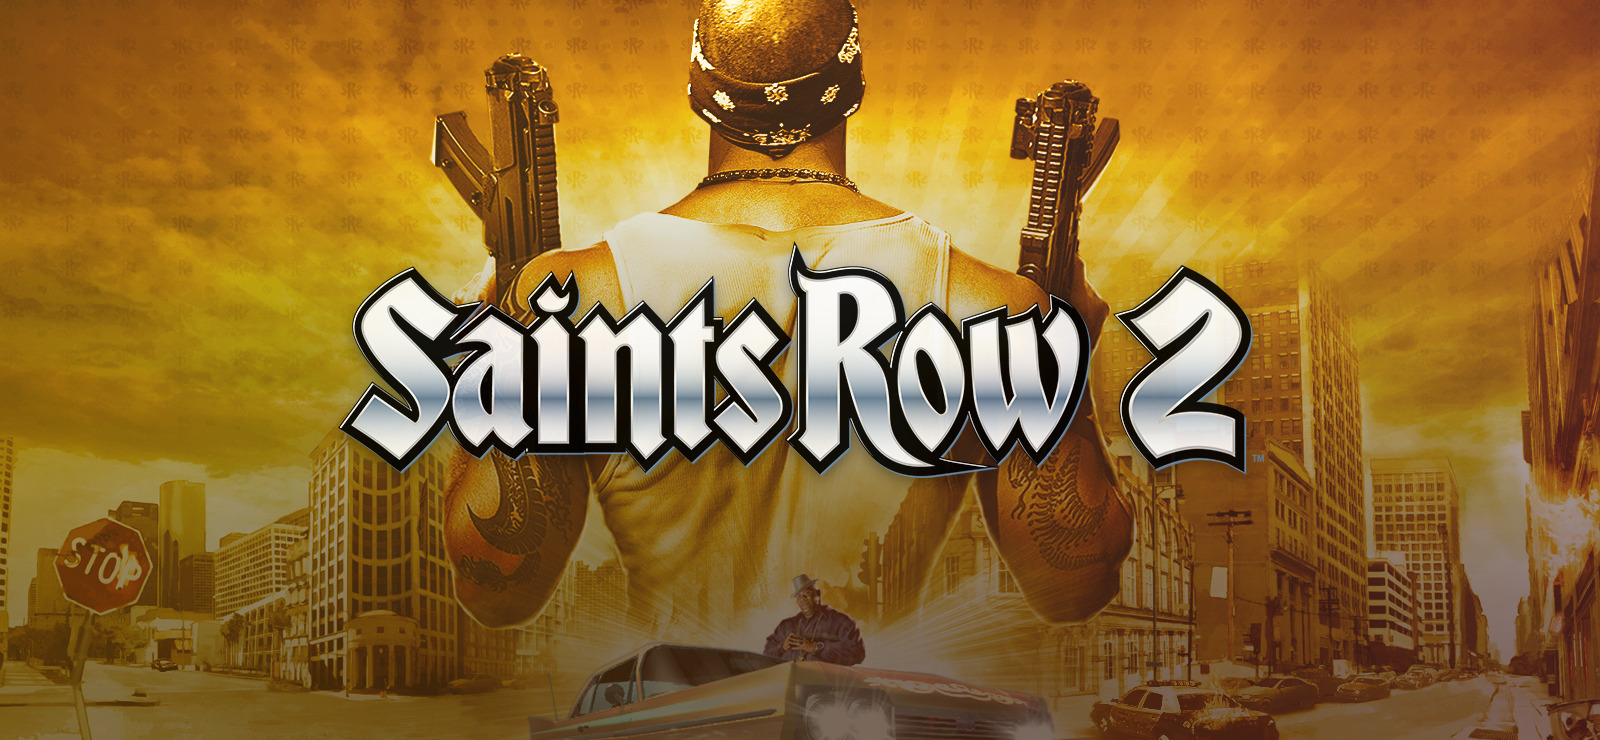 saints row 2 soundtrack